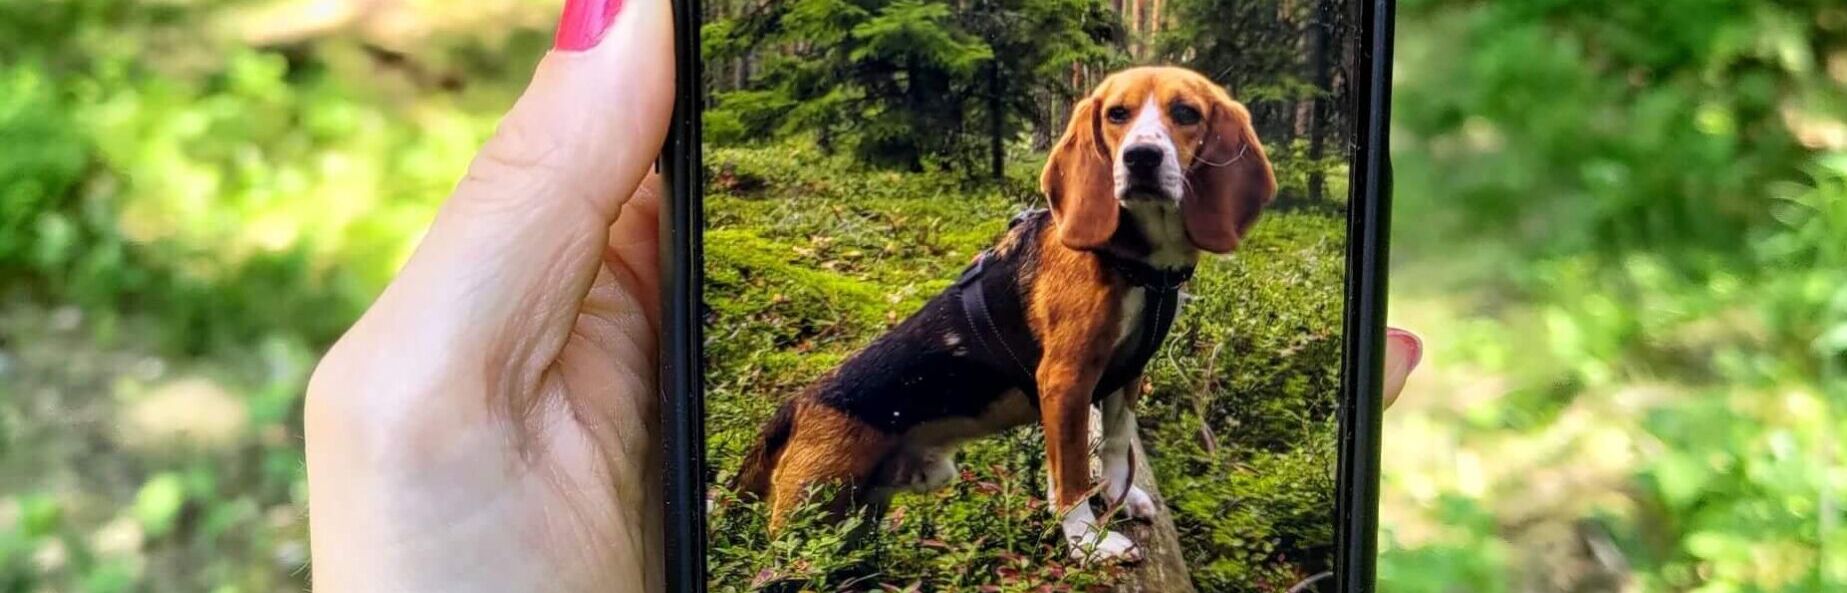 Koira metsässä kuvattuna kännykän näytön kautta.